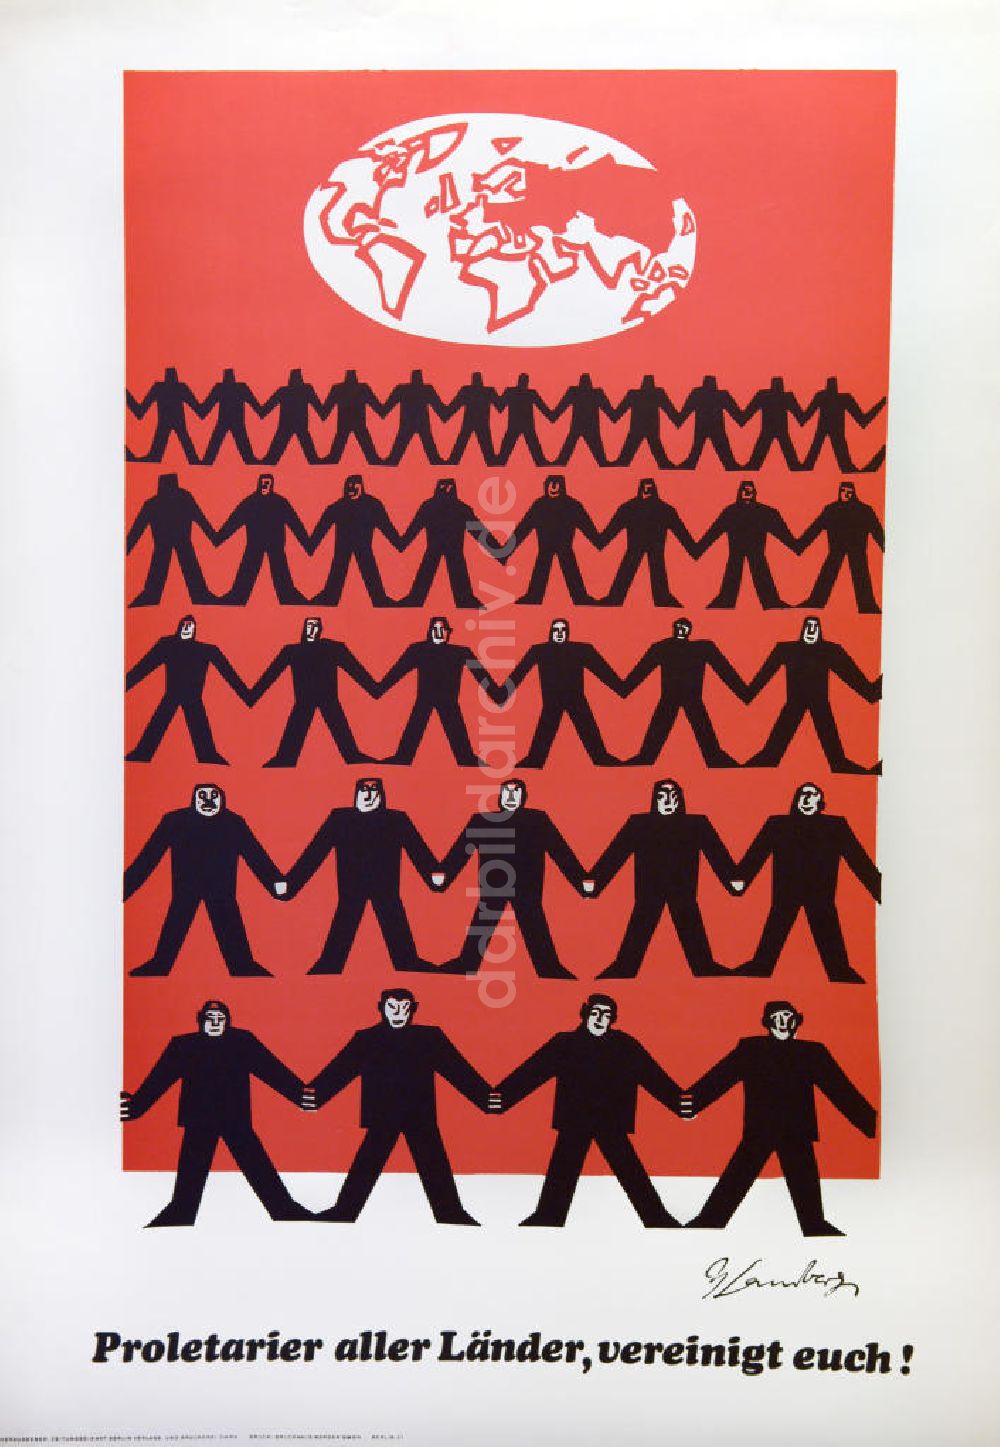 DDR-Bildarchiv: Berlin - Plakat von Herbert Sandberg Proletarier aller Länder, vereinigt euch! aus dem Jahr 1983